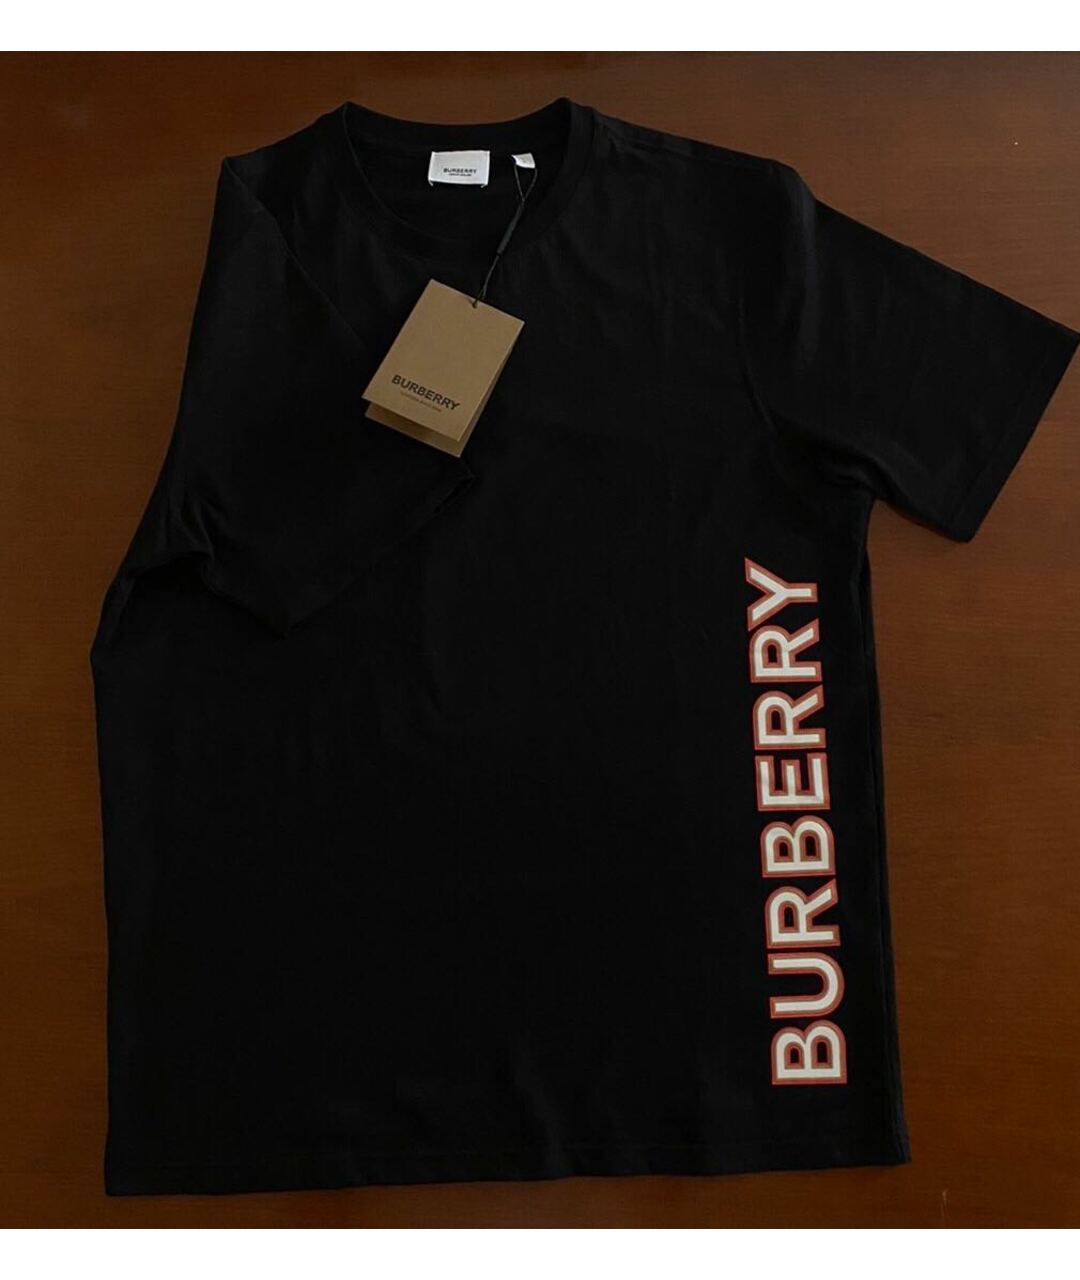 BURBERRY Черная футболка, фото 2